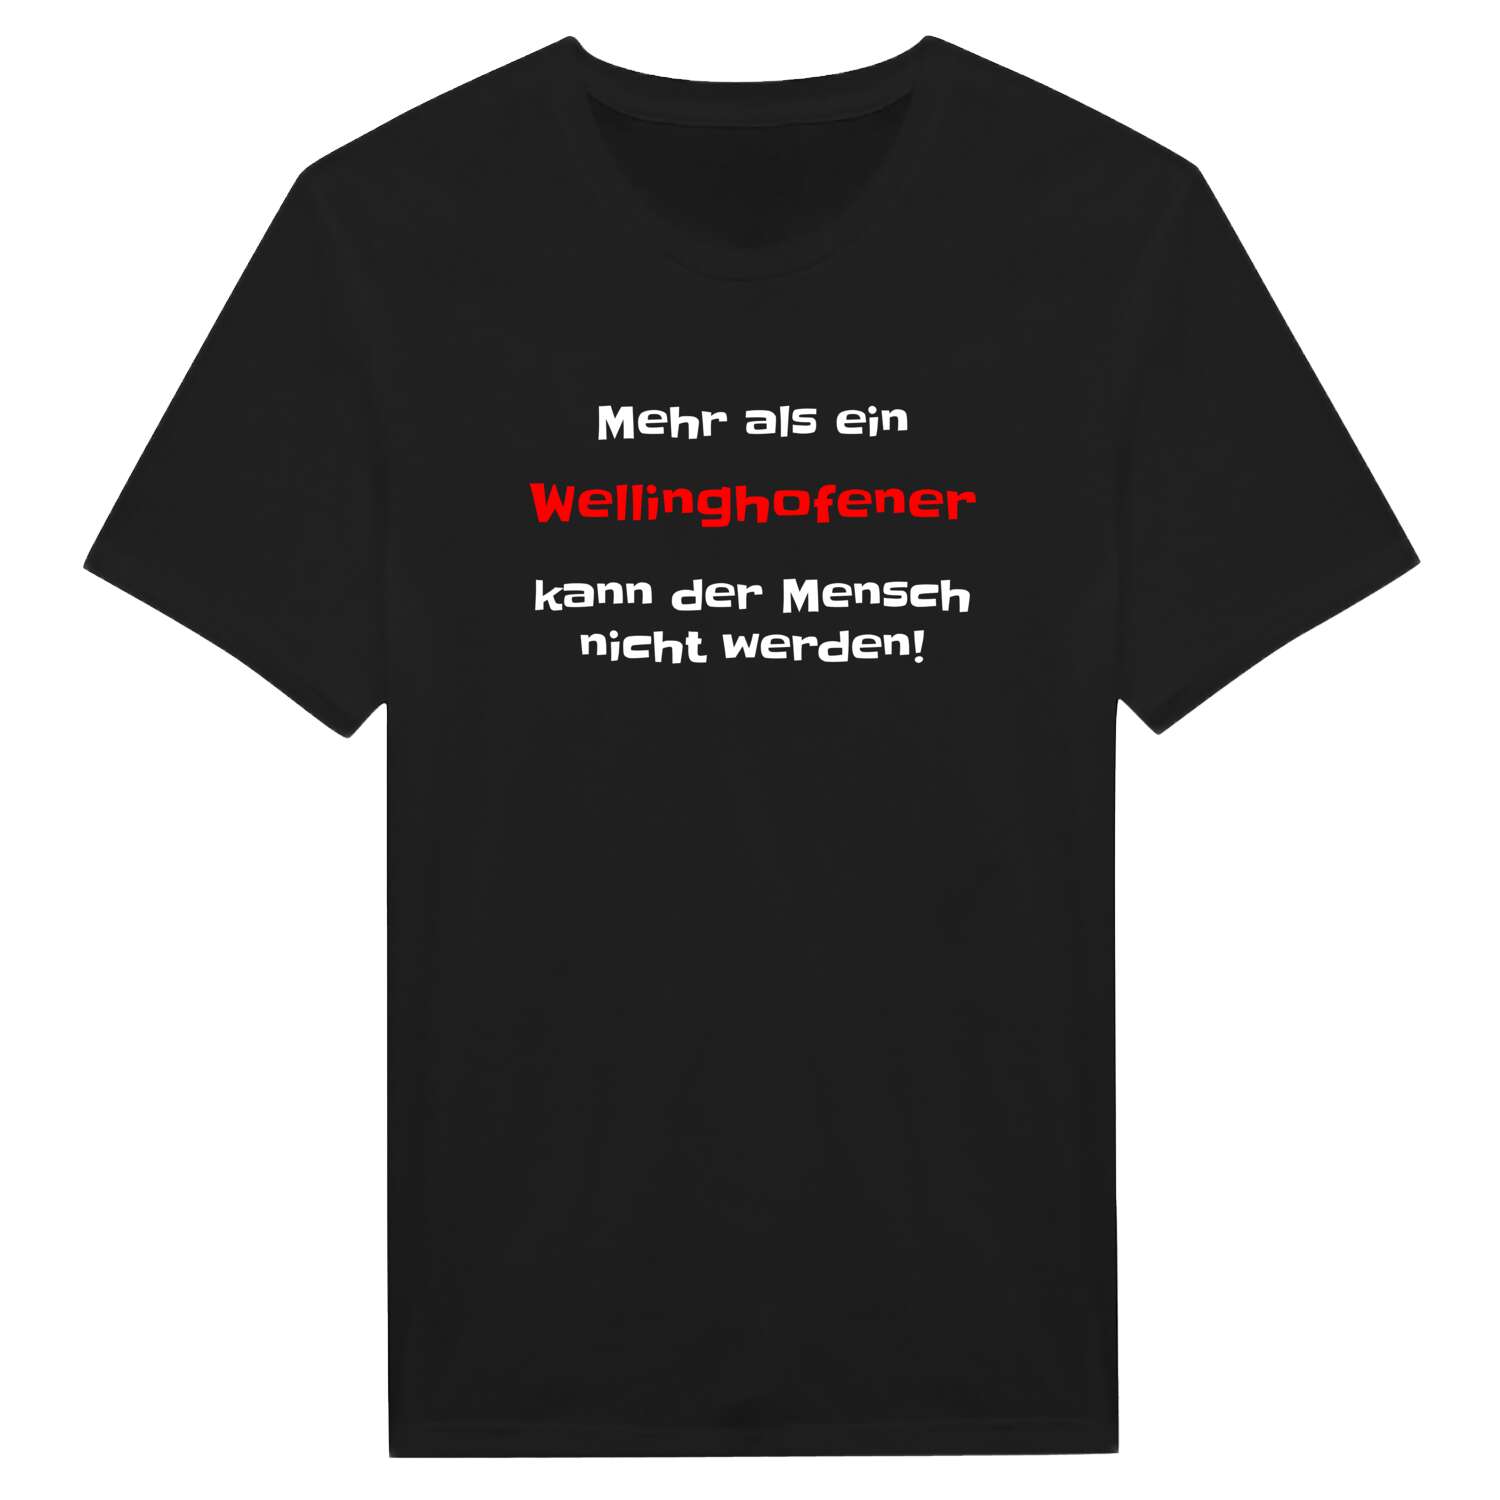 Wellinghofen T-Shirt »Mehr als ein«